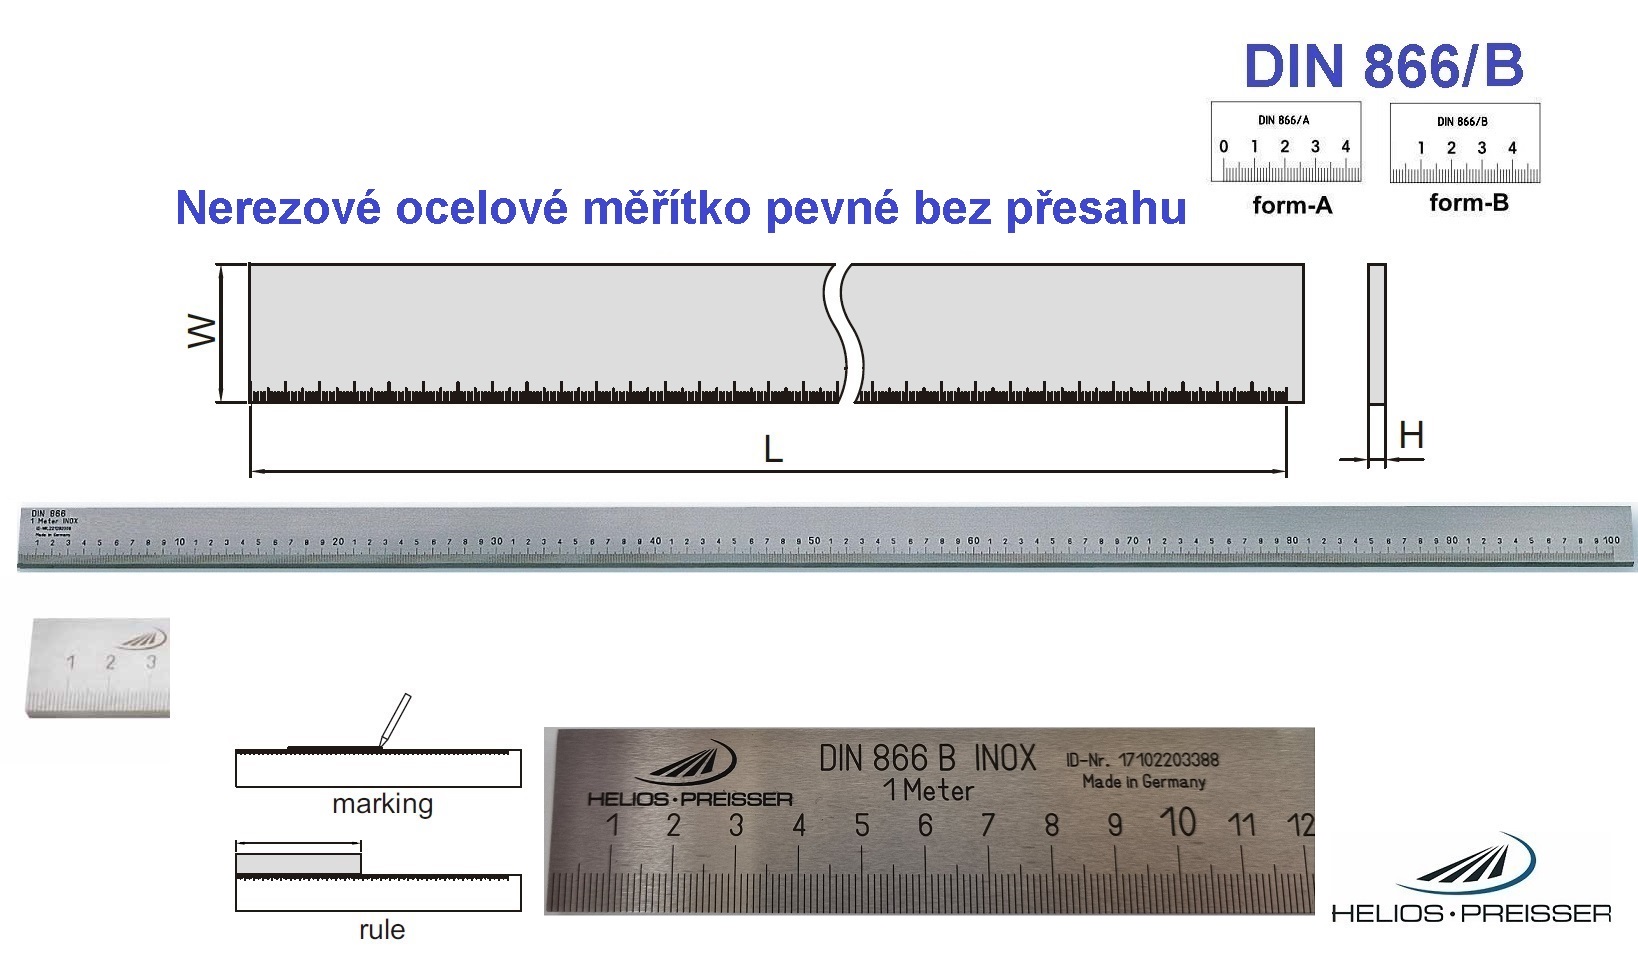 Nerezové ocelové měřítko pevné bez přesahu 5000 /60x12 mm, DIN 866/B, Helios-Preisser